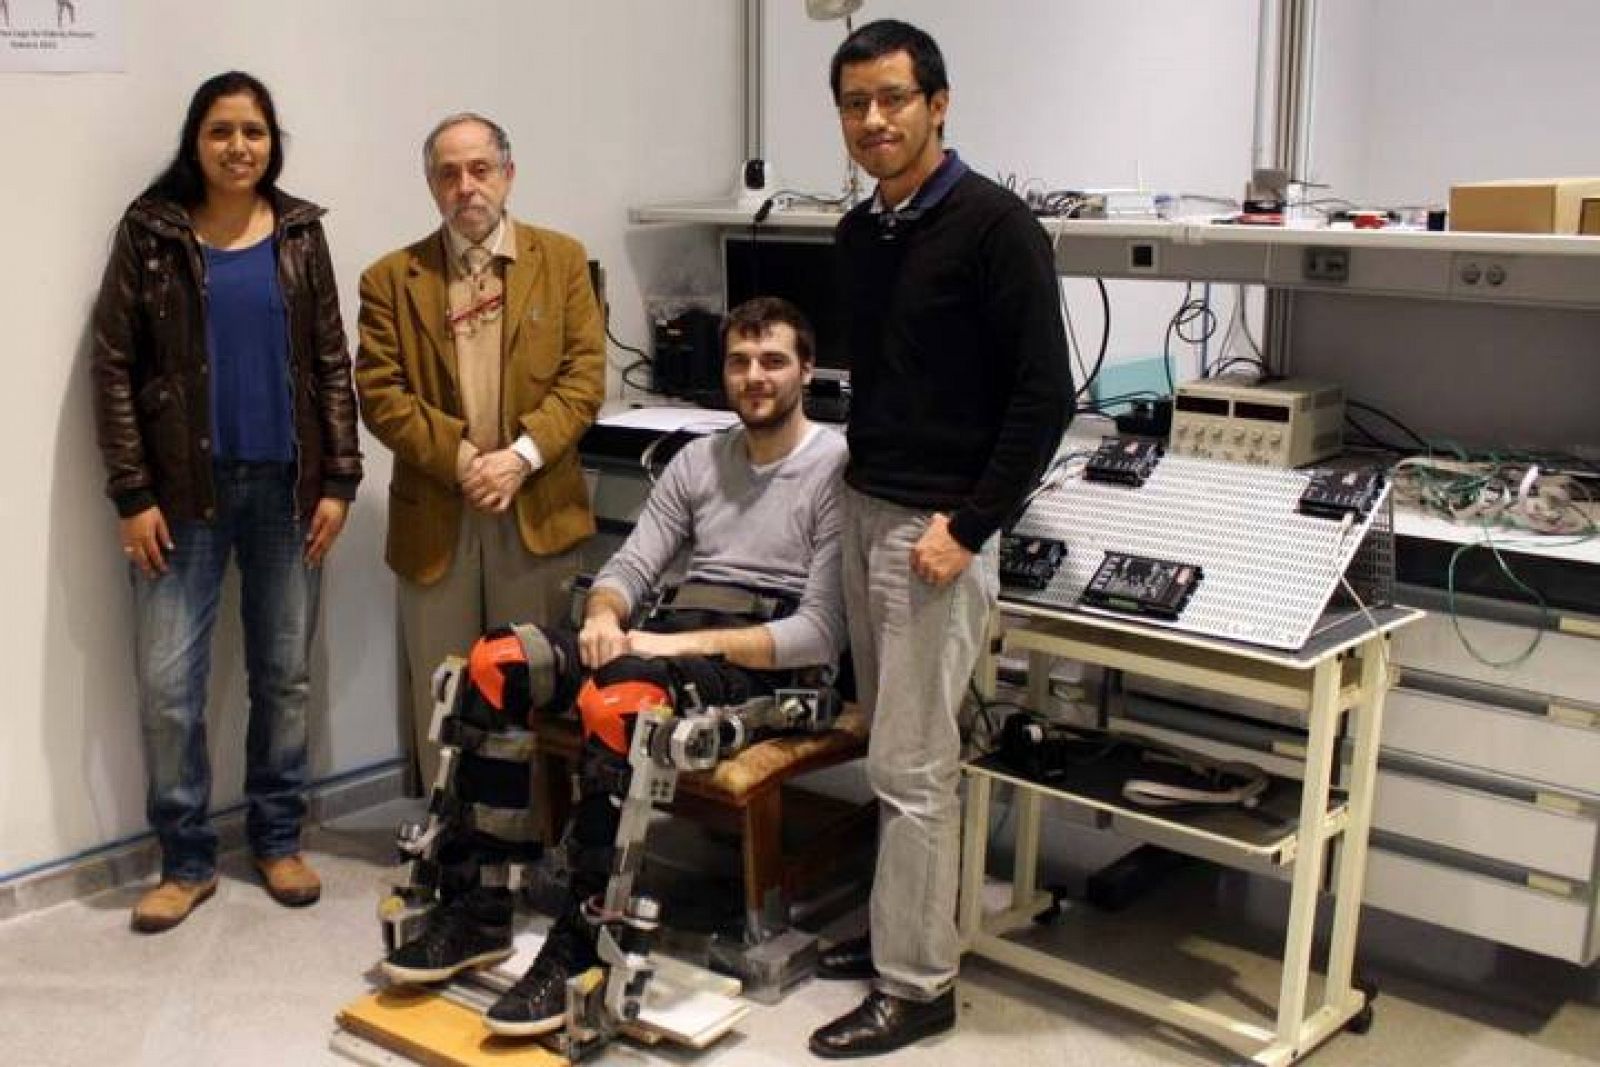  Daniela Miranda, Juan López, Antonio Hernández y Carlos Alberto Díaz mostrando el prototipo de exoesqueleto.